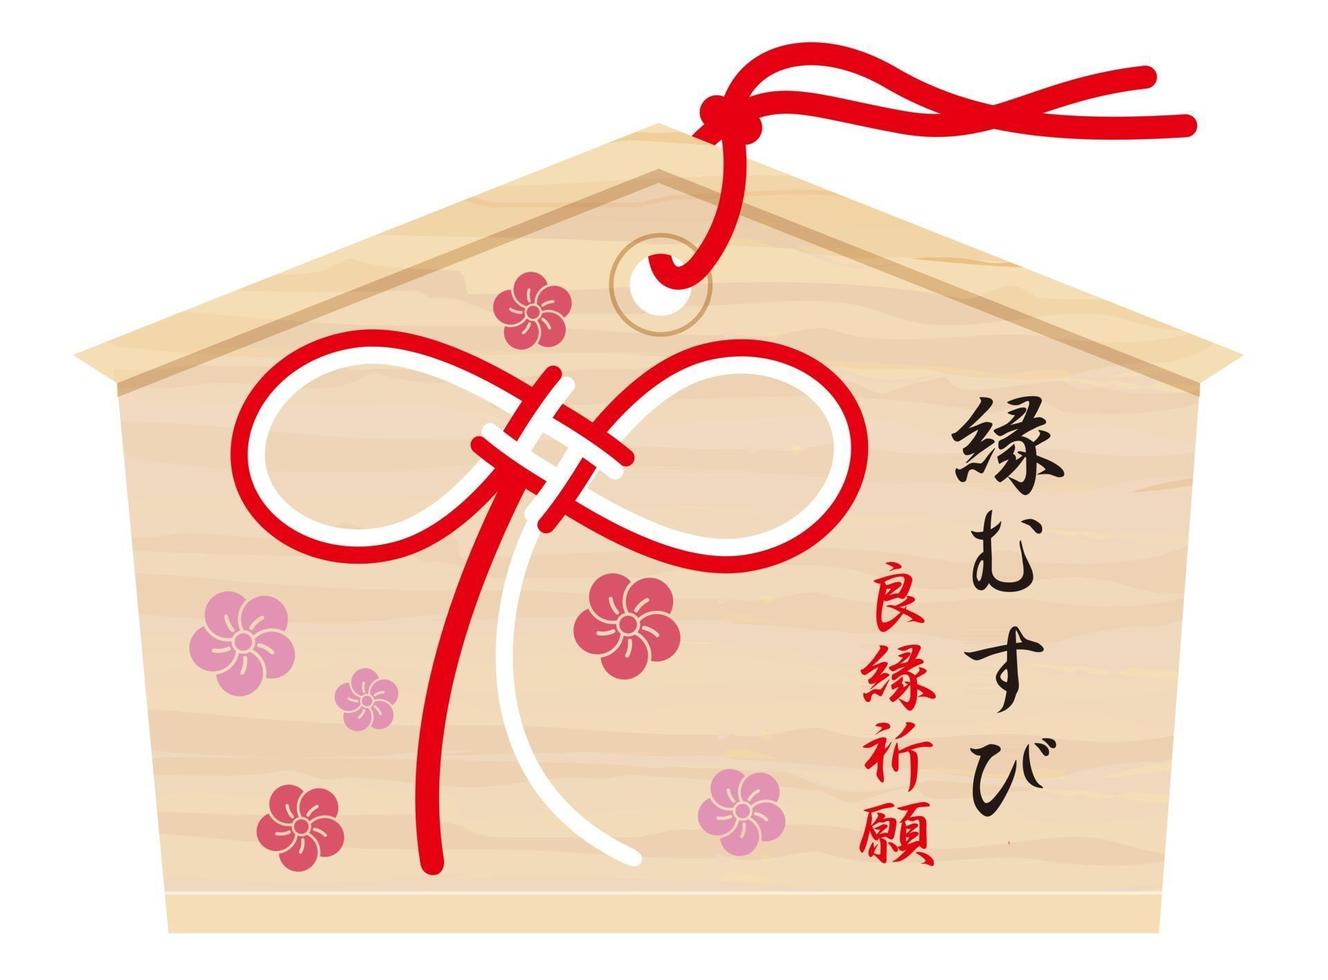 japansk votive tablett med bättre förmögenhet kanji pensel kalligrafi som önskar en bättre äktenskap slips och en symbolisk vintage sträng illustration vektor